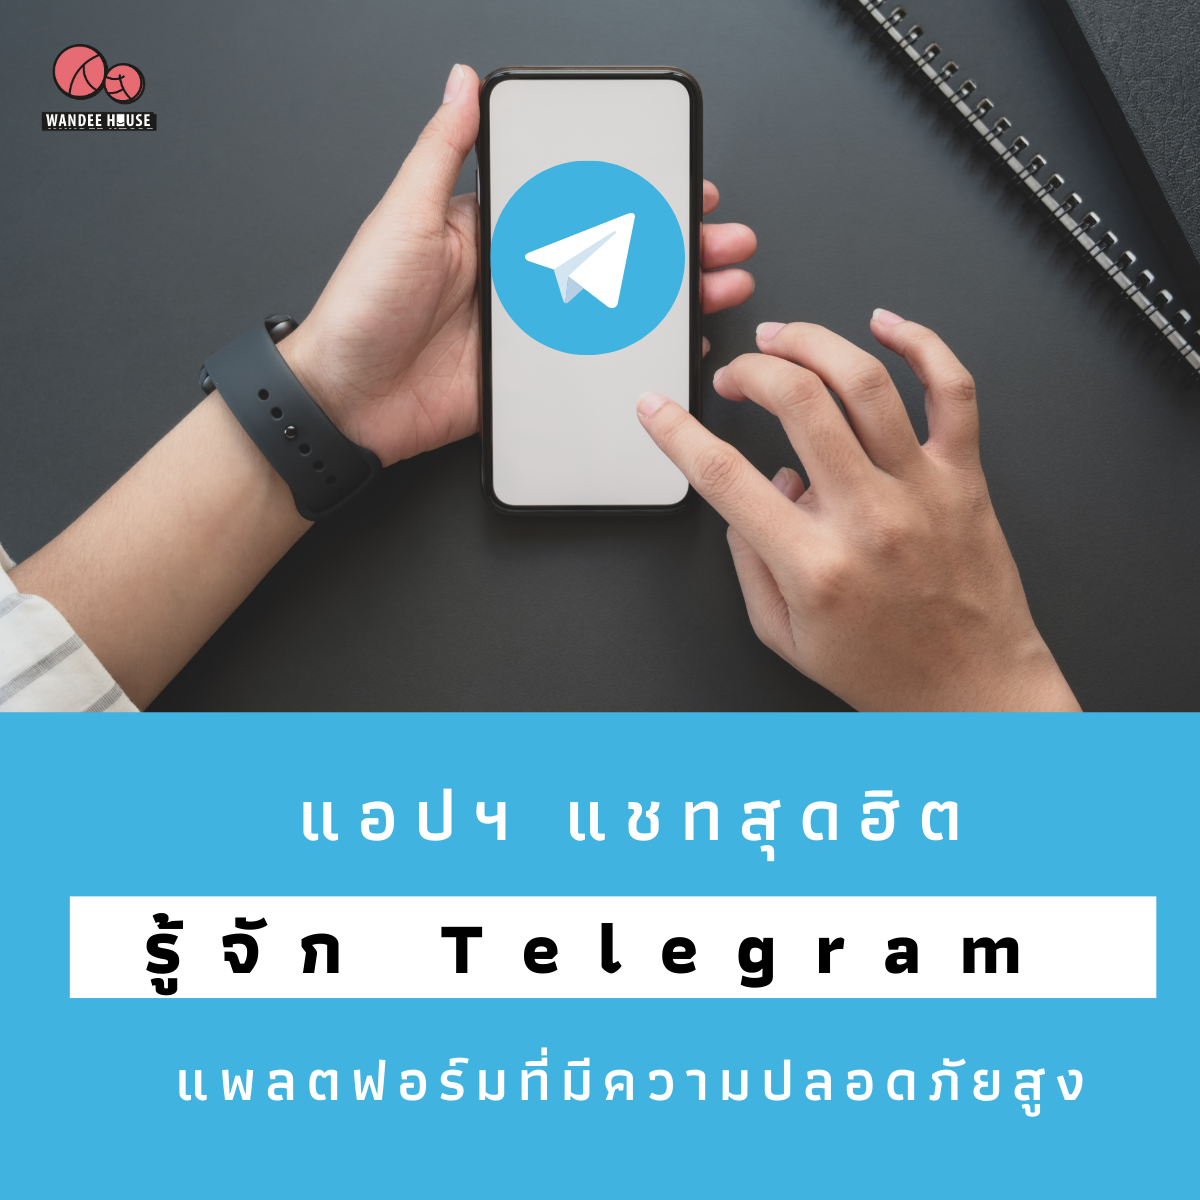 สรุป 5 ข้อรู้จัก Telegram แอปฯ แชทความปลอดภัยสูง ทั่วโลกใช้ต่อเดือนสูงถึง 400 ล้านคน